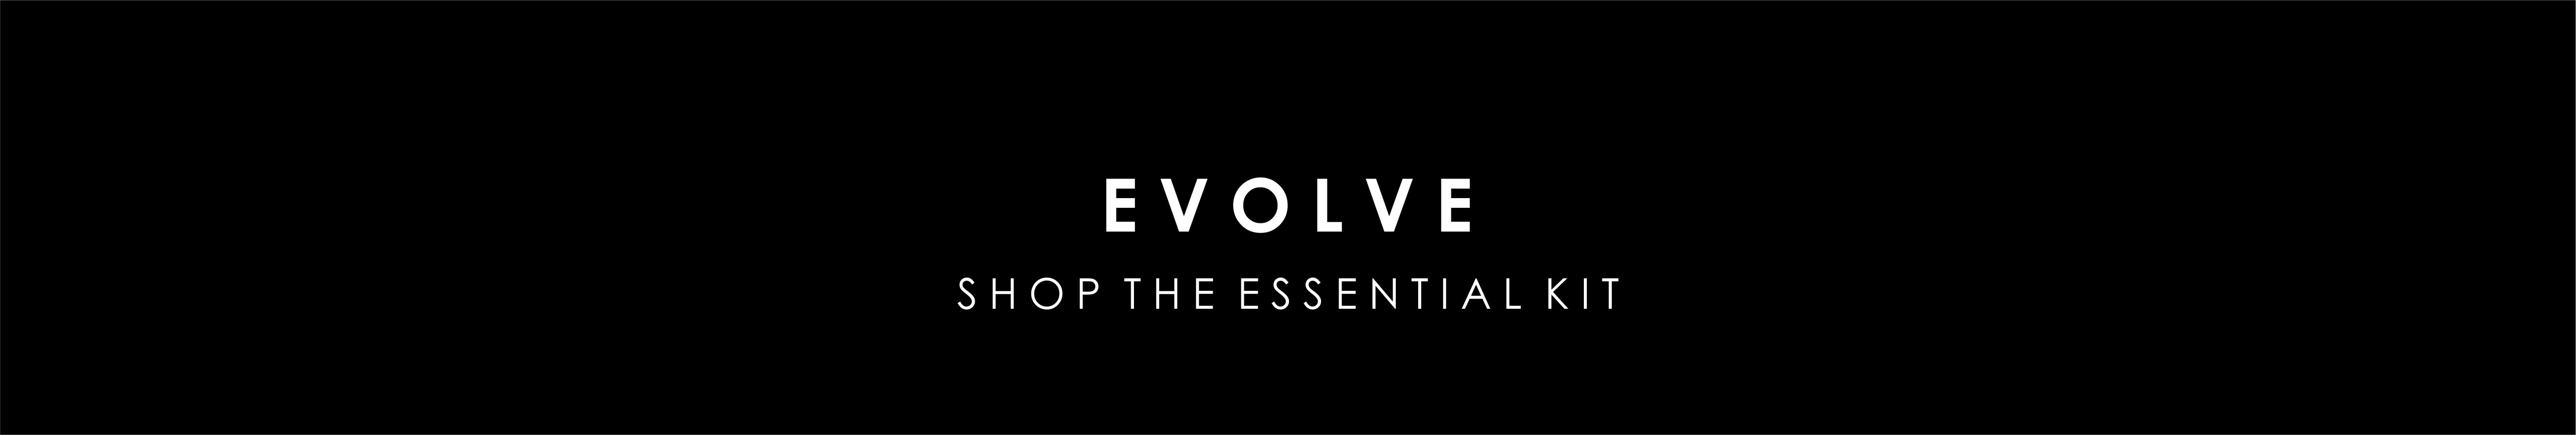 evolve-banner.jpg